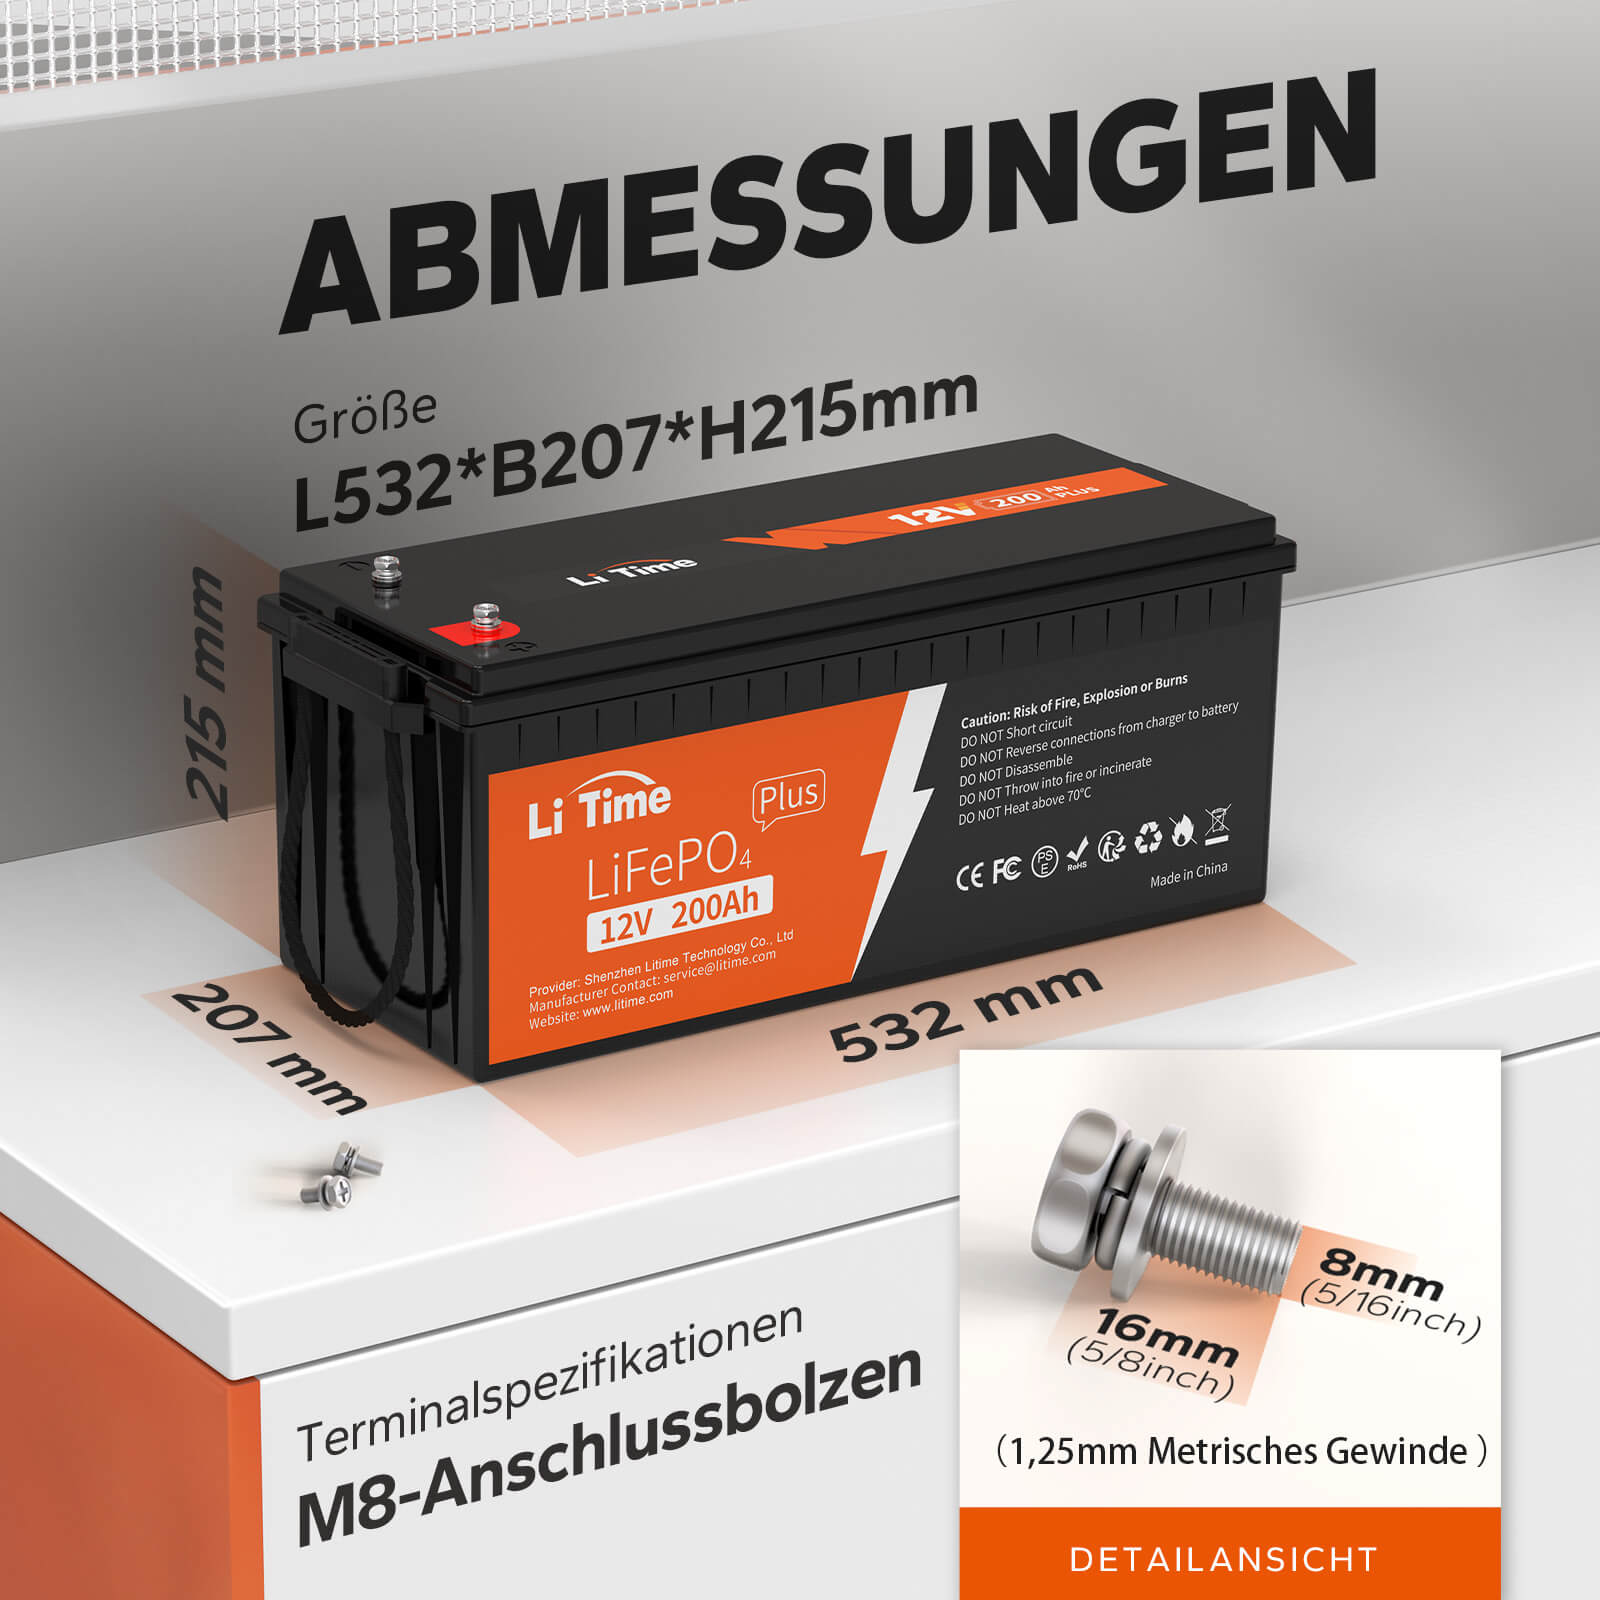 【0% IVA】Batería LiTime 12V 200Ah Plus Lithium LiFePO4 (SOLO para edificios residenciales y SOLO en DEU - Solo para clientes en Alemania)